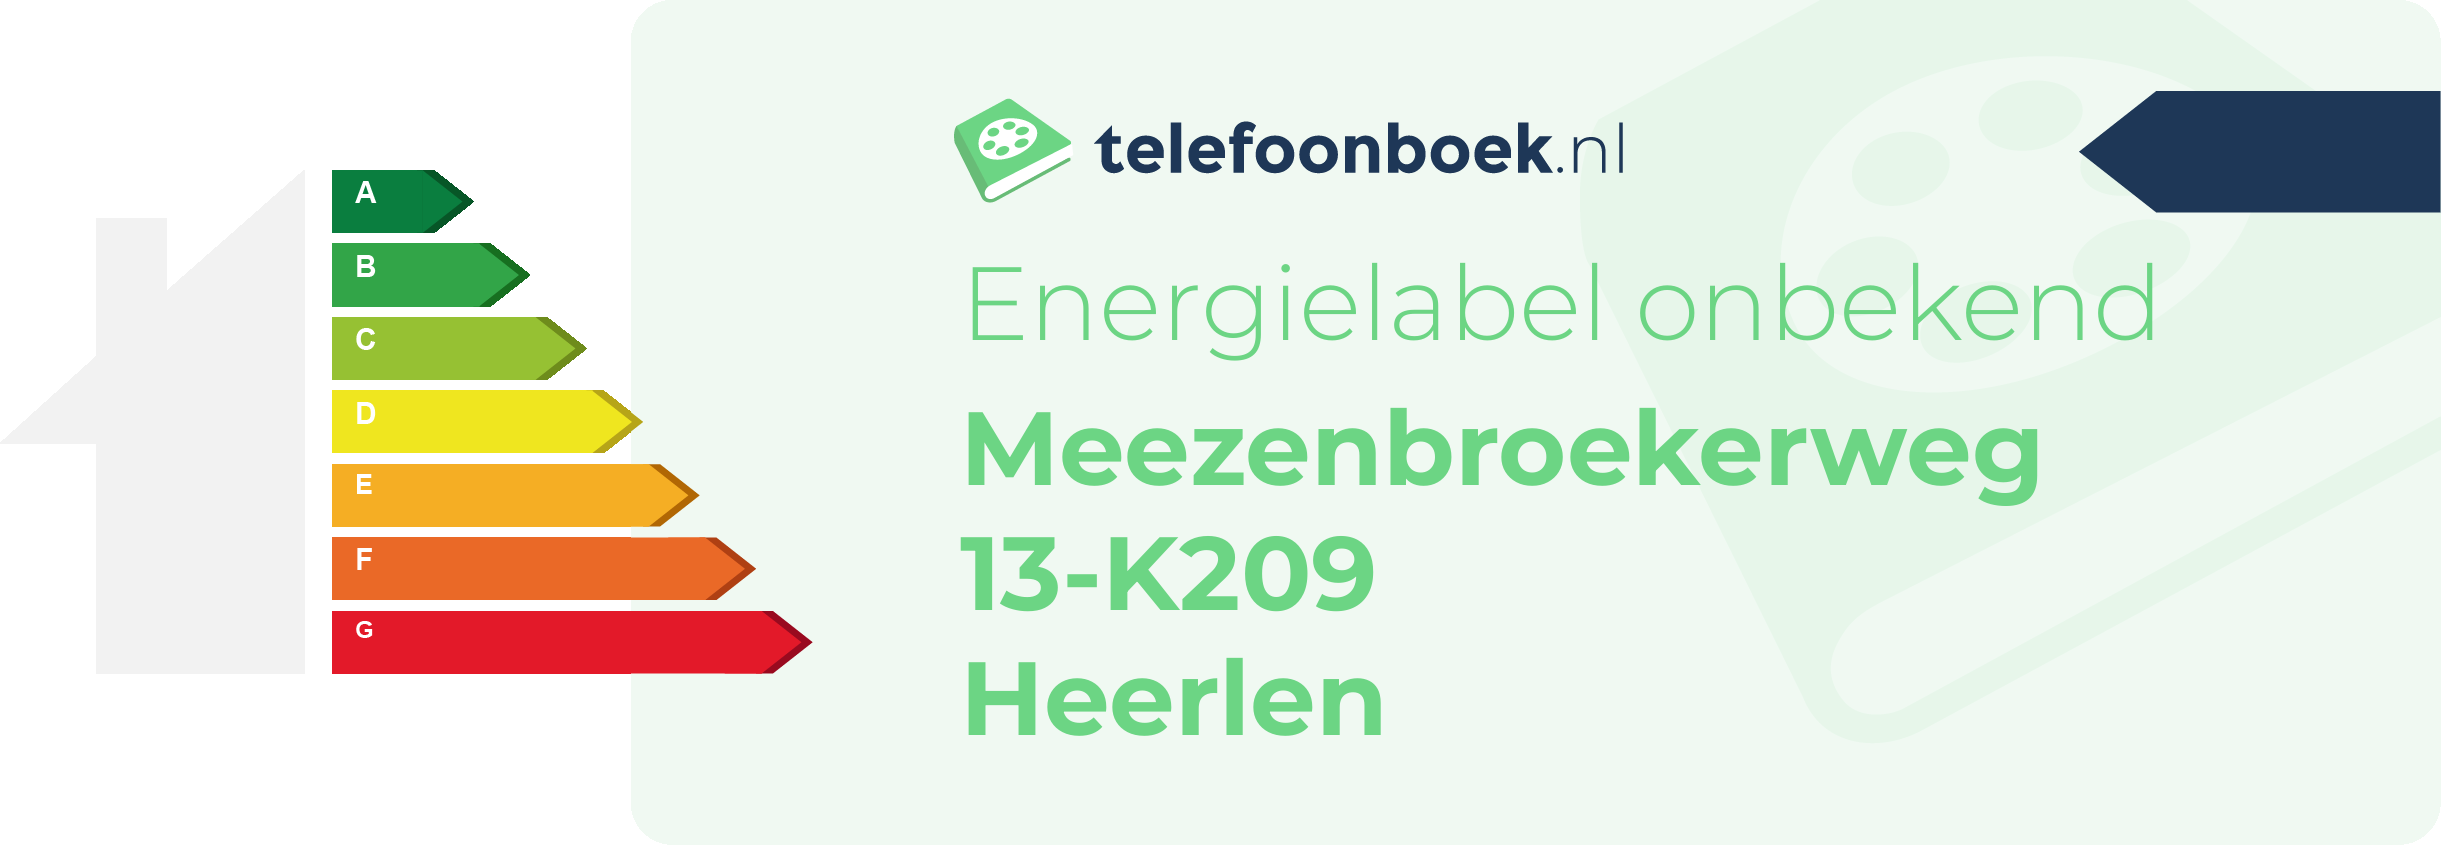 Energielabel Meezenbroekerweg 13-K209 Heerlen